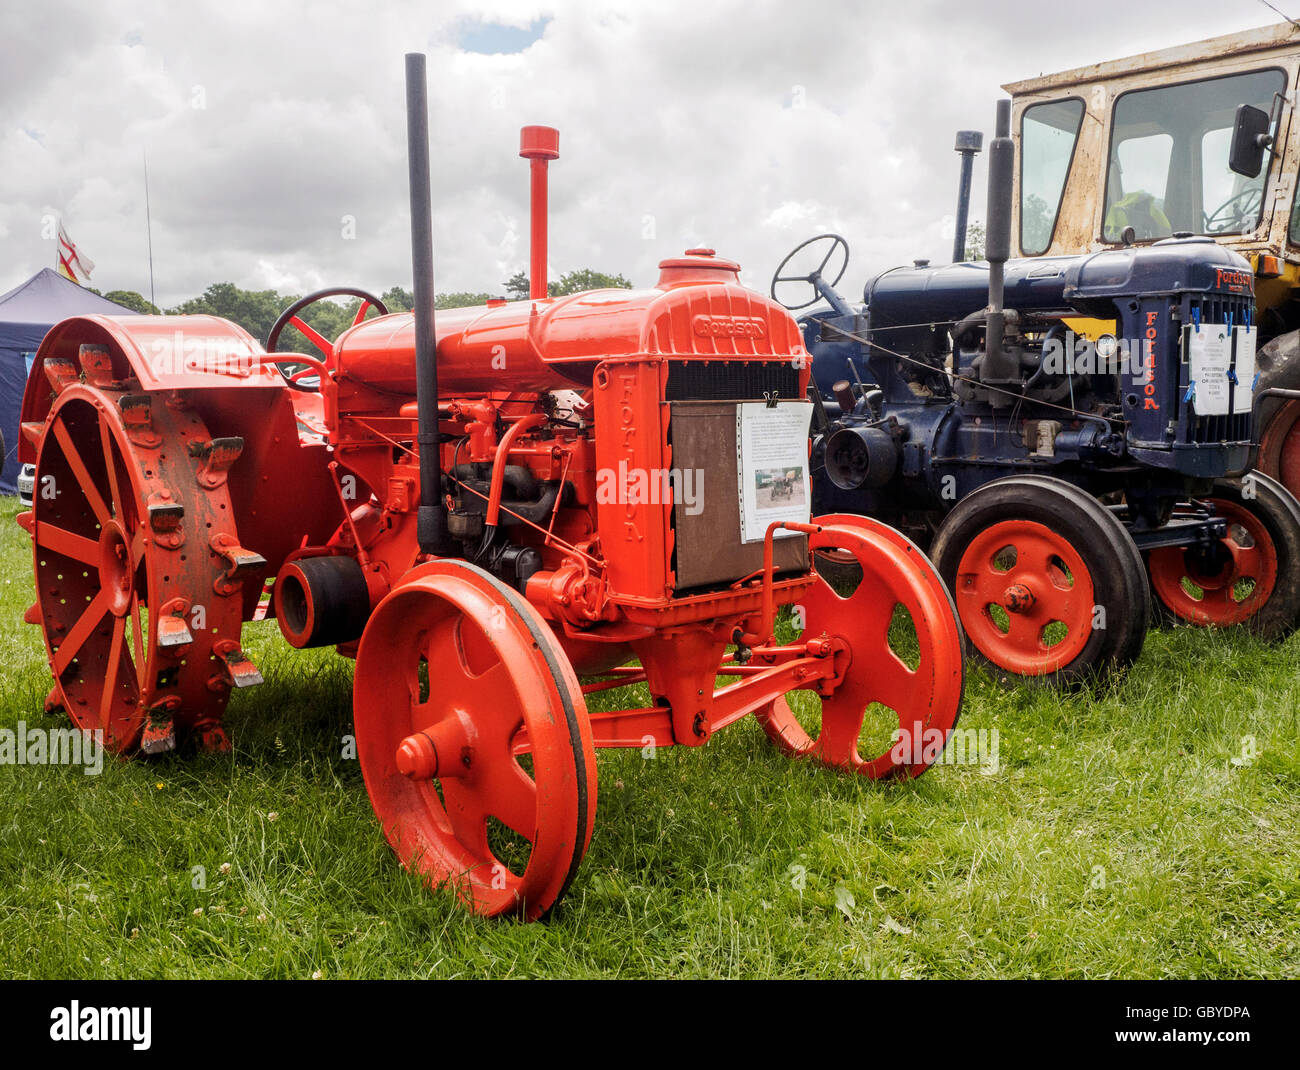 Fordson Modell N Traktor aus dem Jahr 1927 hergestellt und wichtig für die landwirtschaftliche Produktion in Großbritannien während des 2. Weltkrieges. Stockfoto